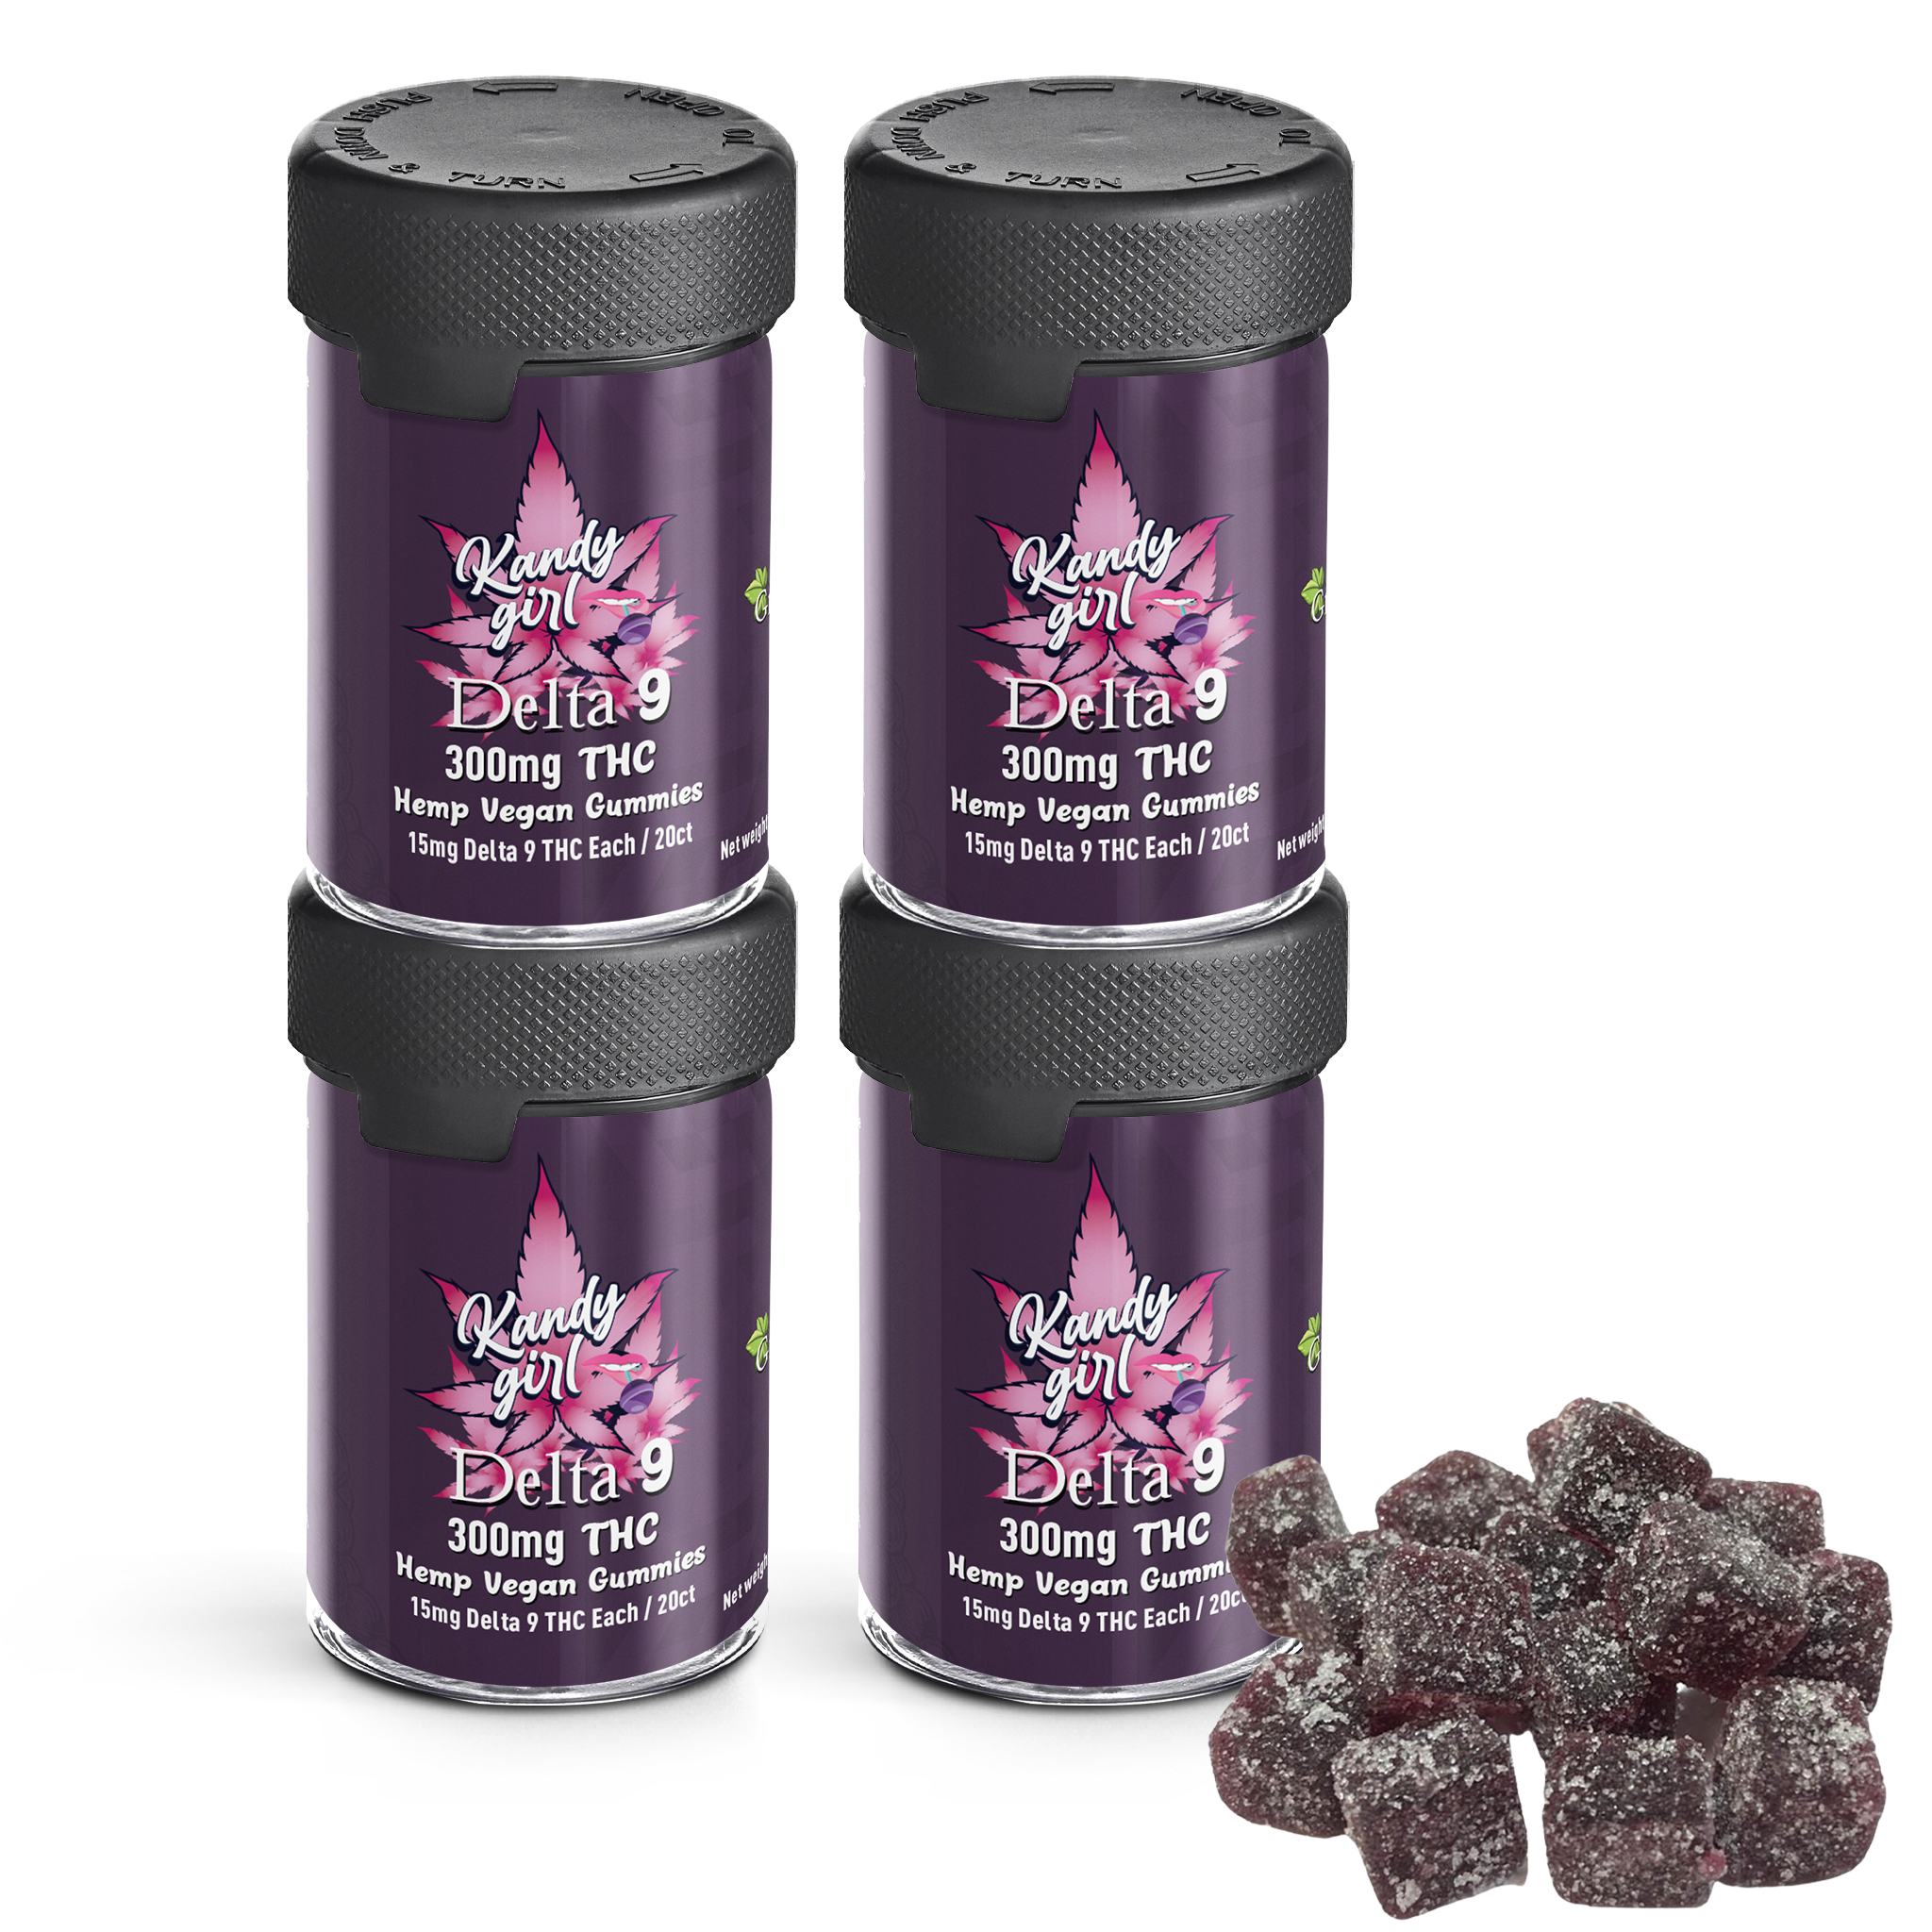 Delta 9 THC Gummies Grape Vegan - Four Bottle Bundle (1200mg THC Total)